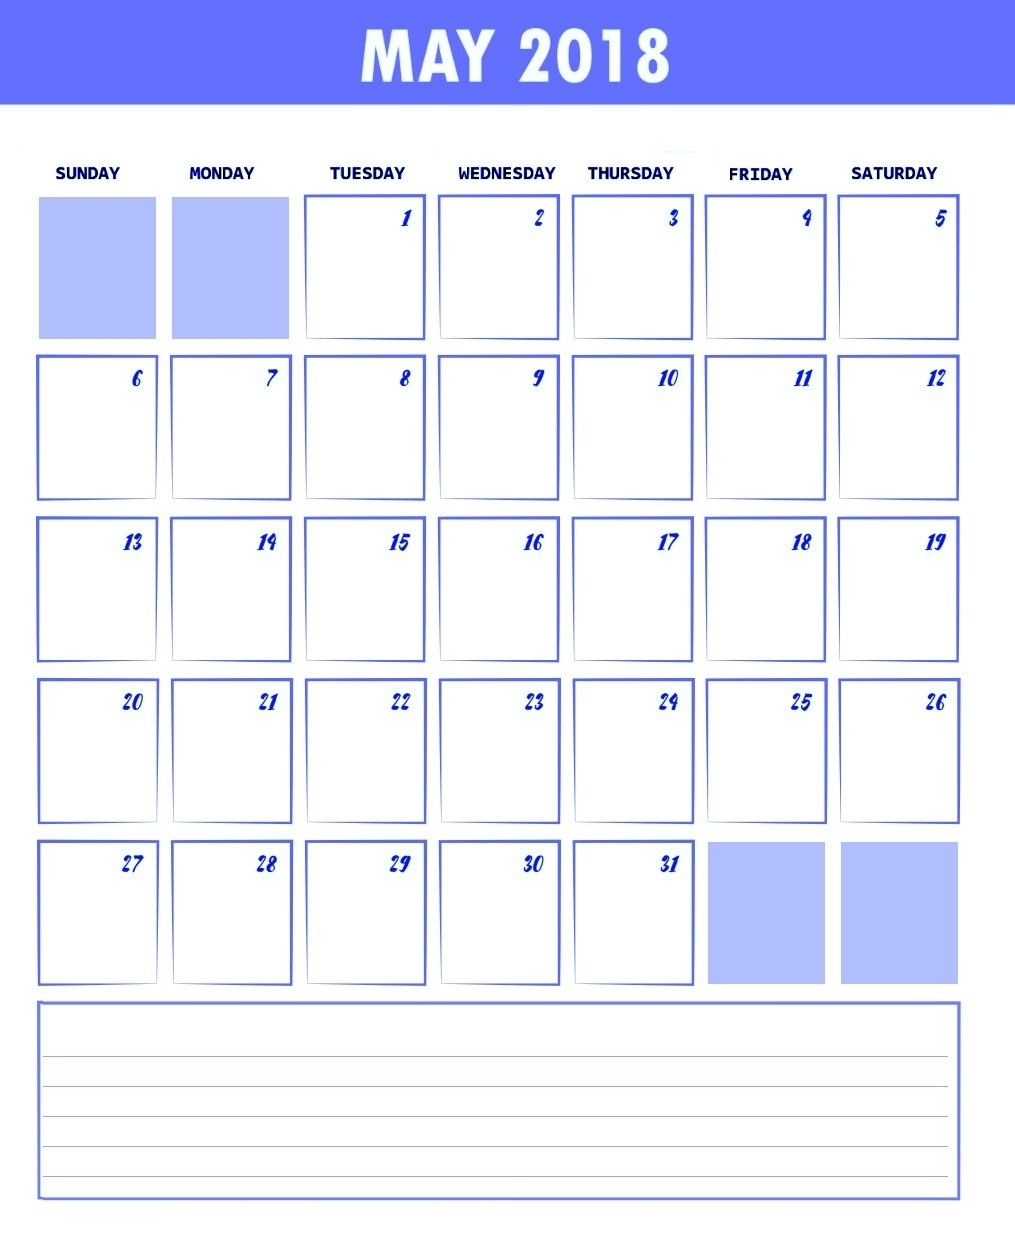 Waterproofpaper Free Printable Calendar | Calendar pertaining to Waterproof Paper Printable Calendar